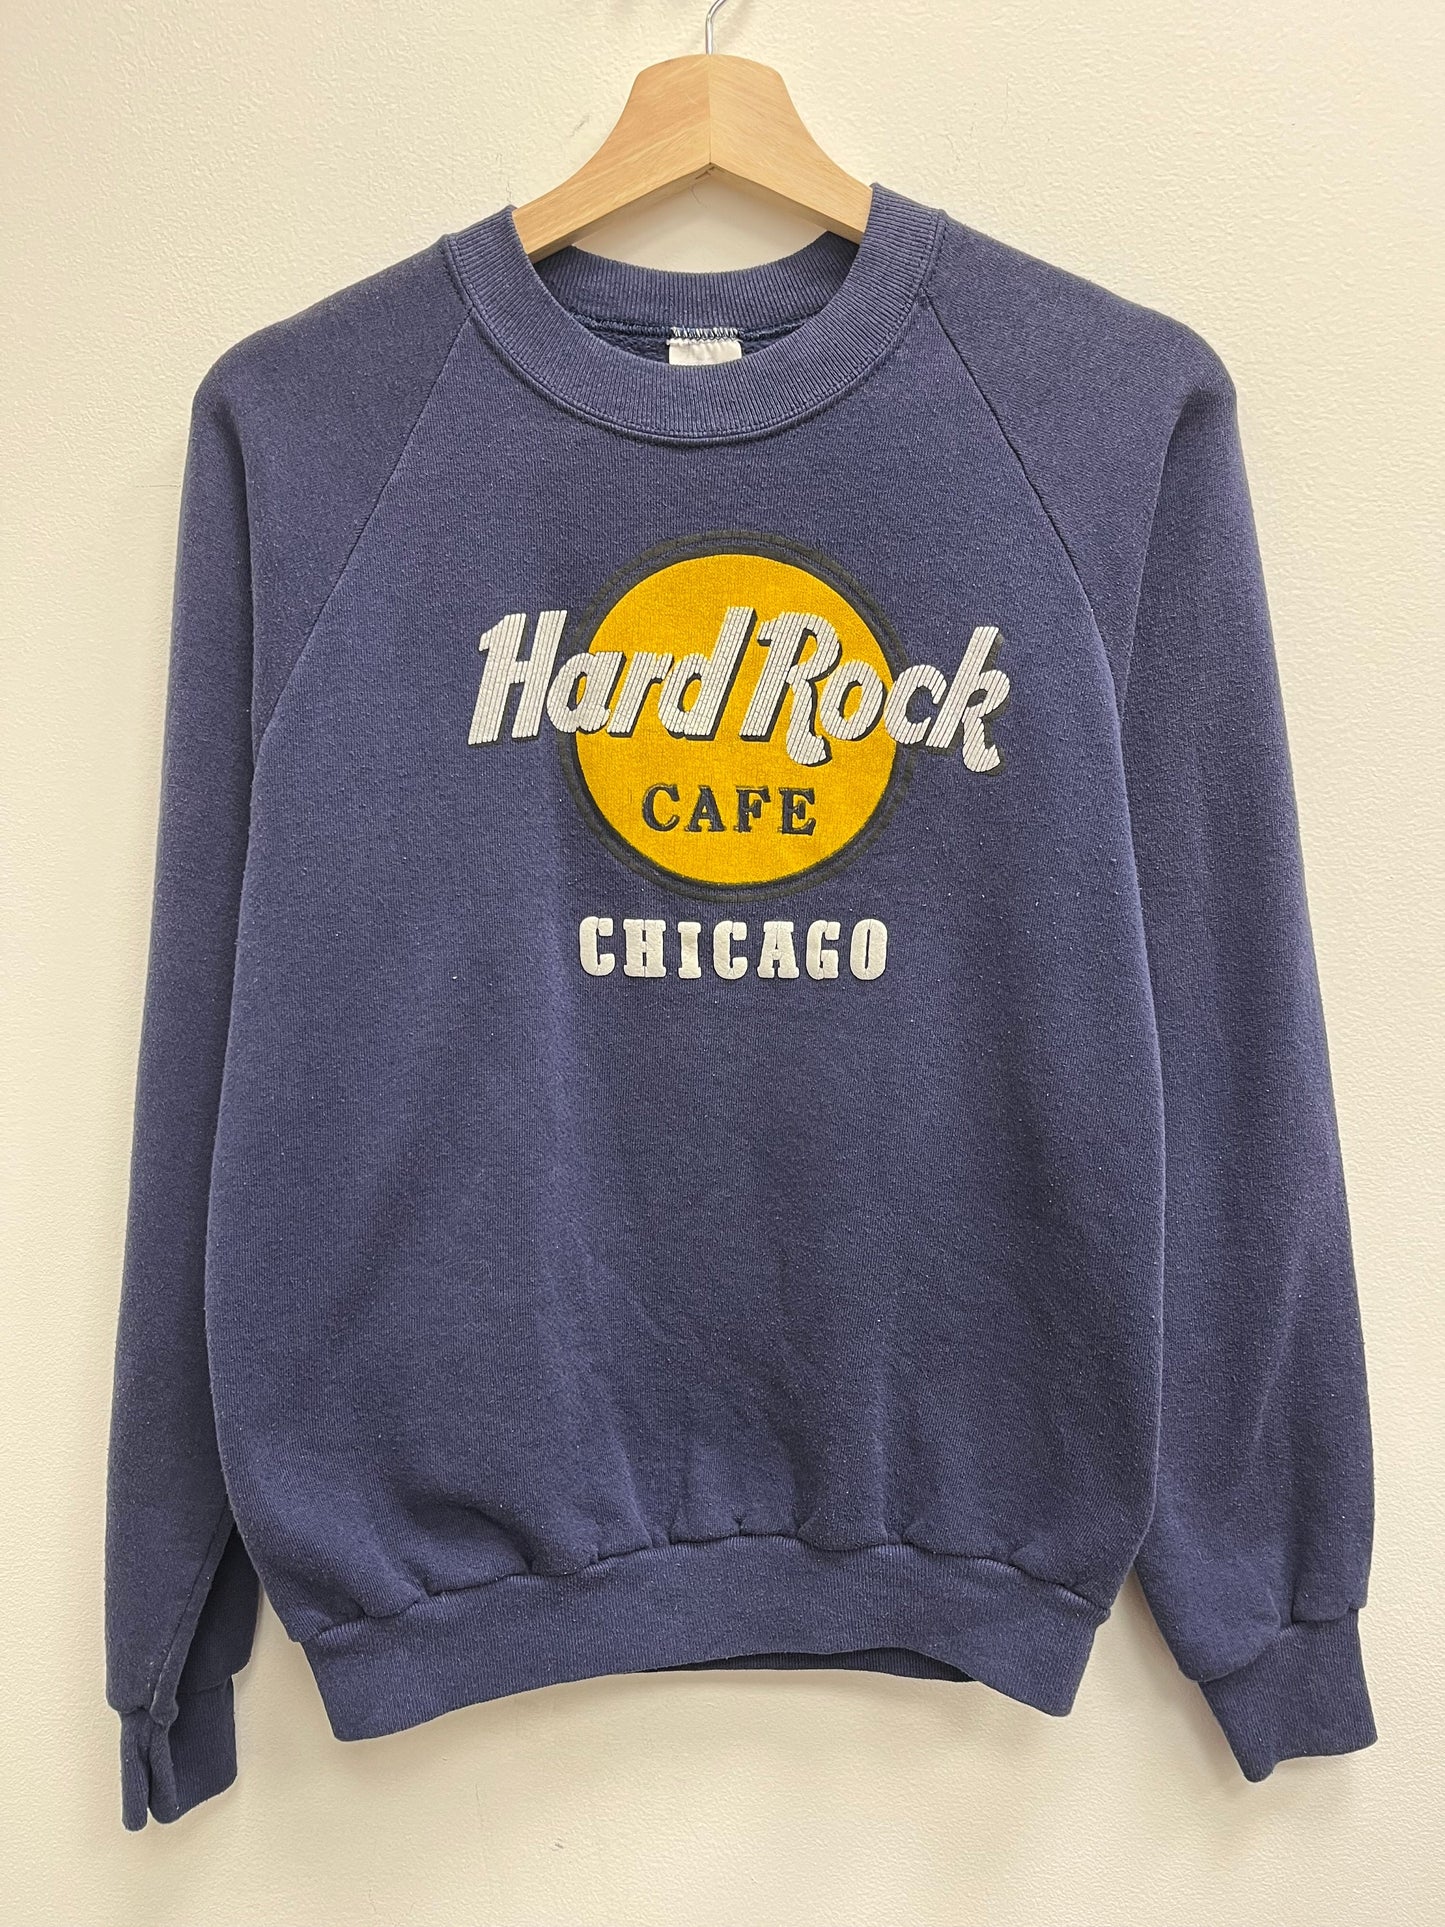 Vintage 1990’s Hard Rock Cafe Chicago Crewneck